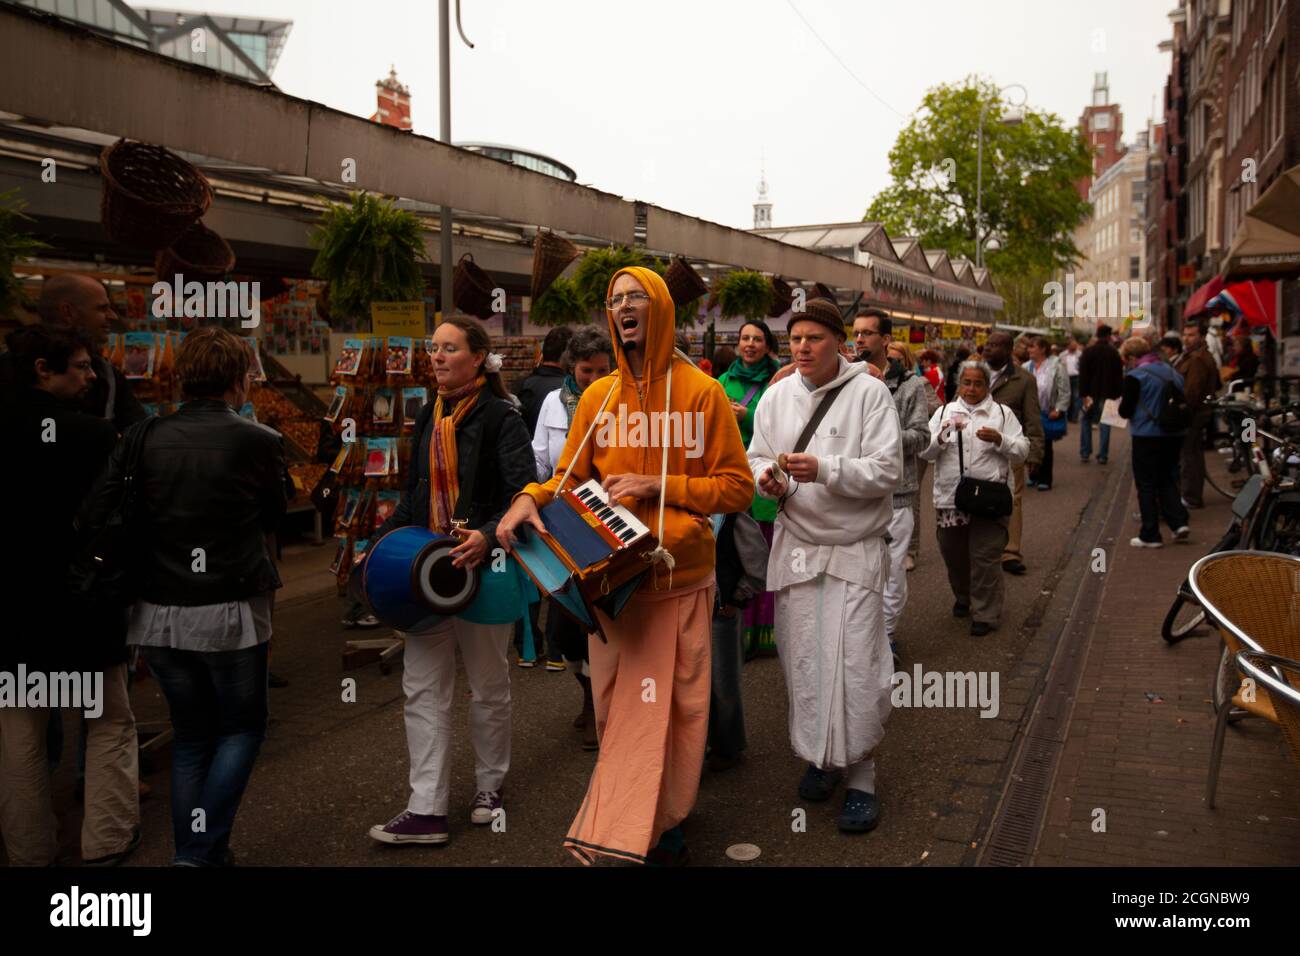 Amsterdam, Niederlande 05/15/2010: Eine lokale Religionsgemeinschaft macht eine Parade. Mitglieder tragen Roben und spielen Musikinstrumente, während sie wa Stockfoto